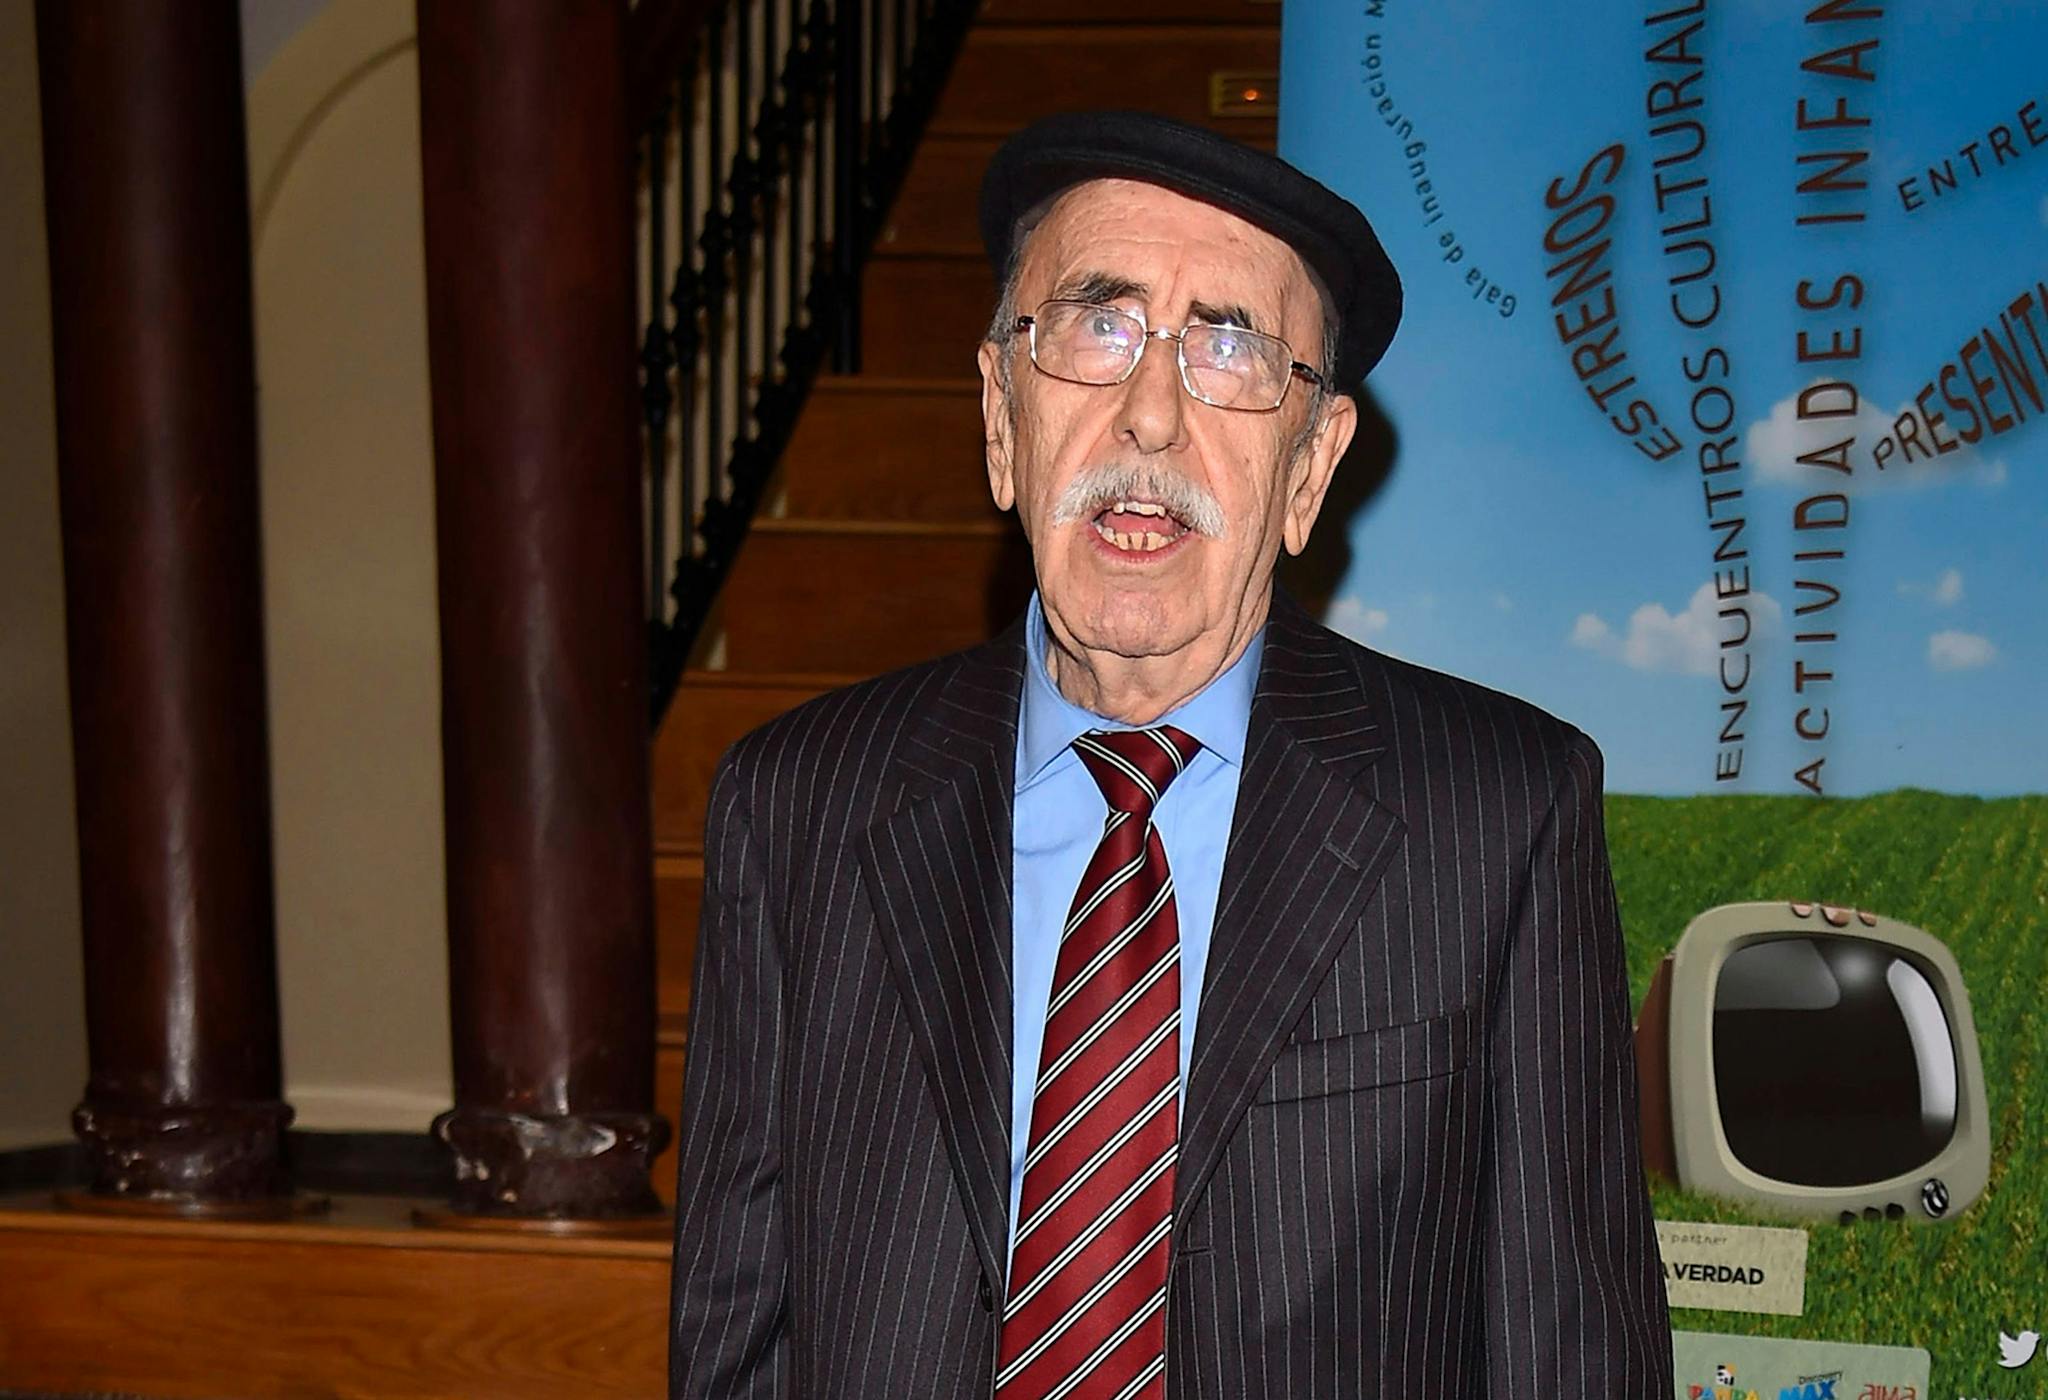 El actor Jesús Guzmán, conocido por su papel en la serie 'Crónicas de un pueblo', ha fallecido a los 97 años